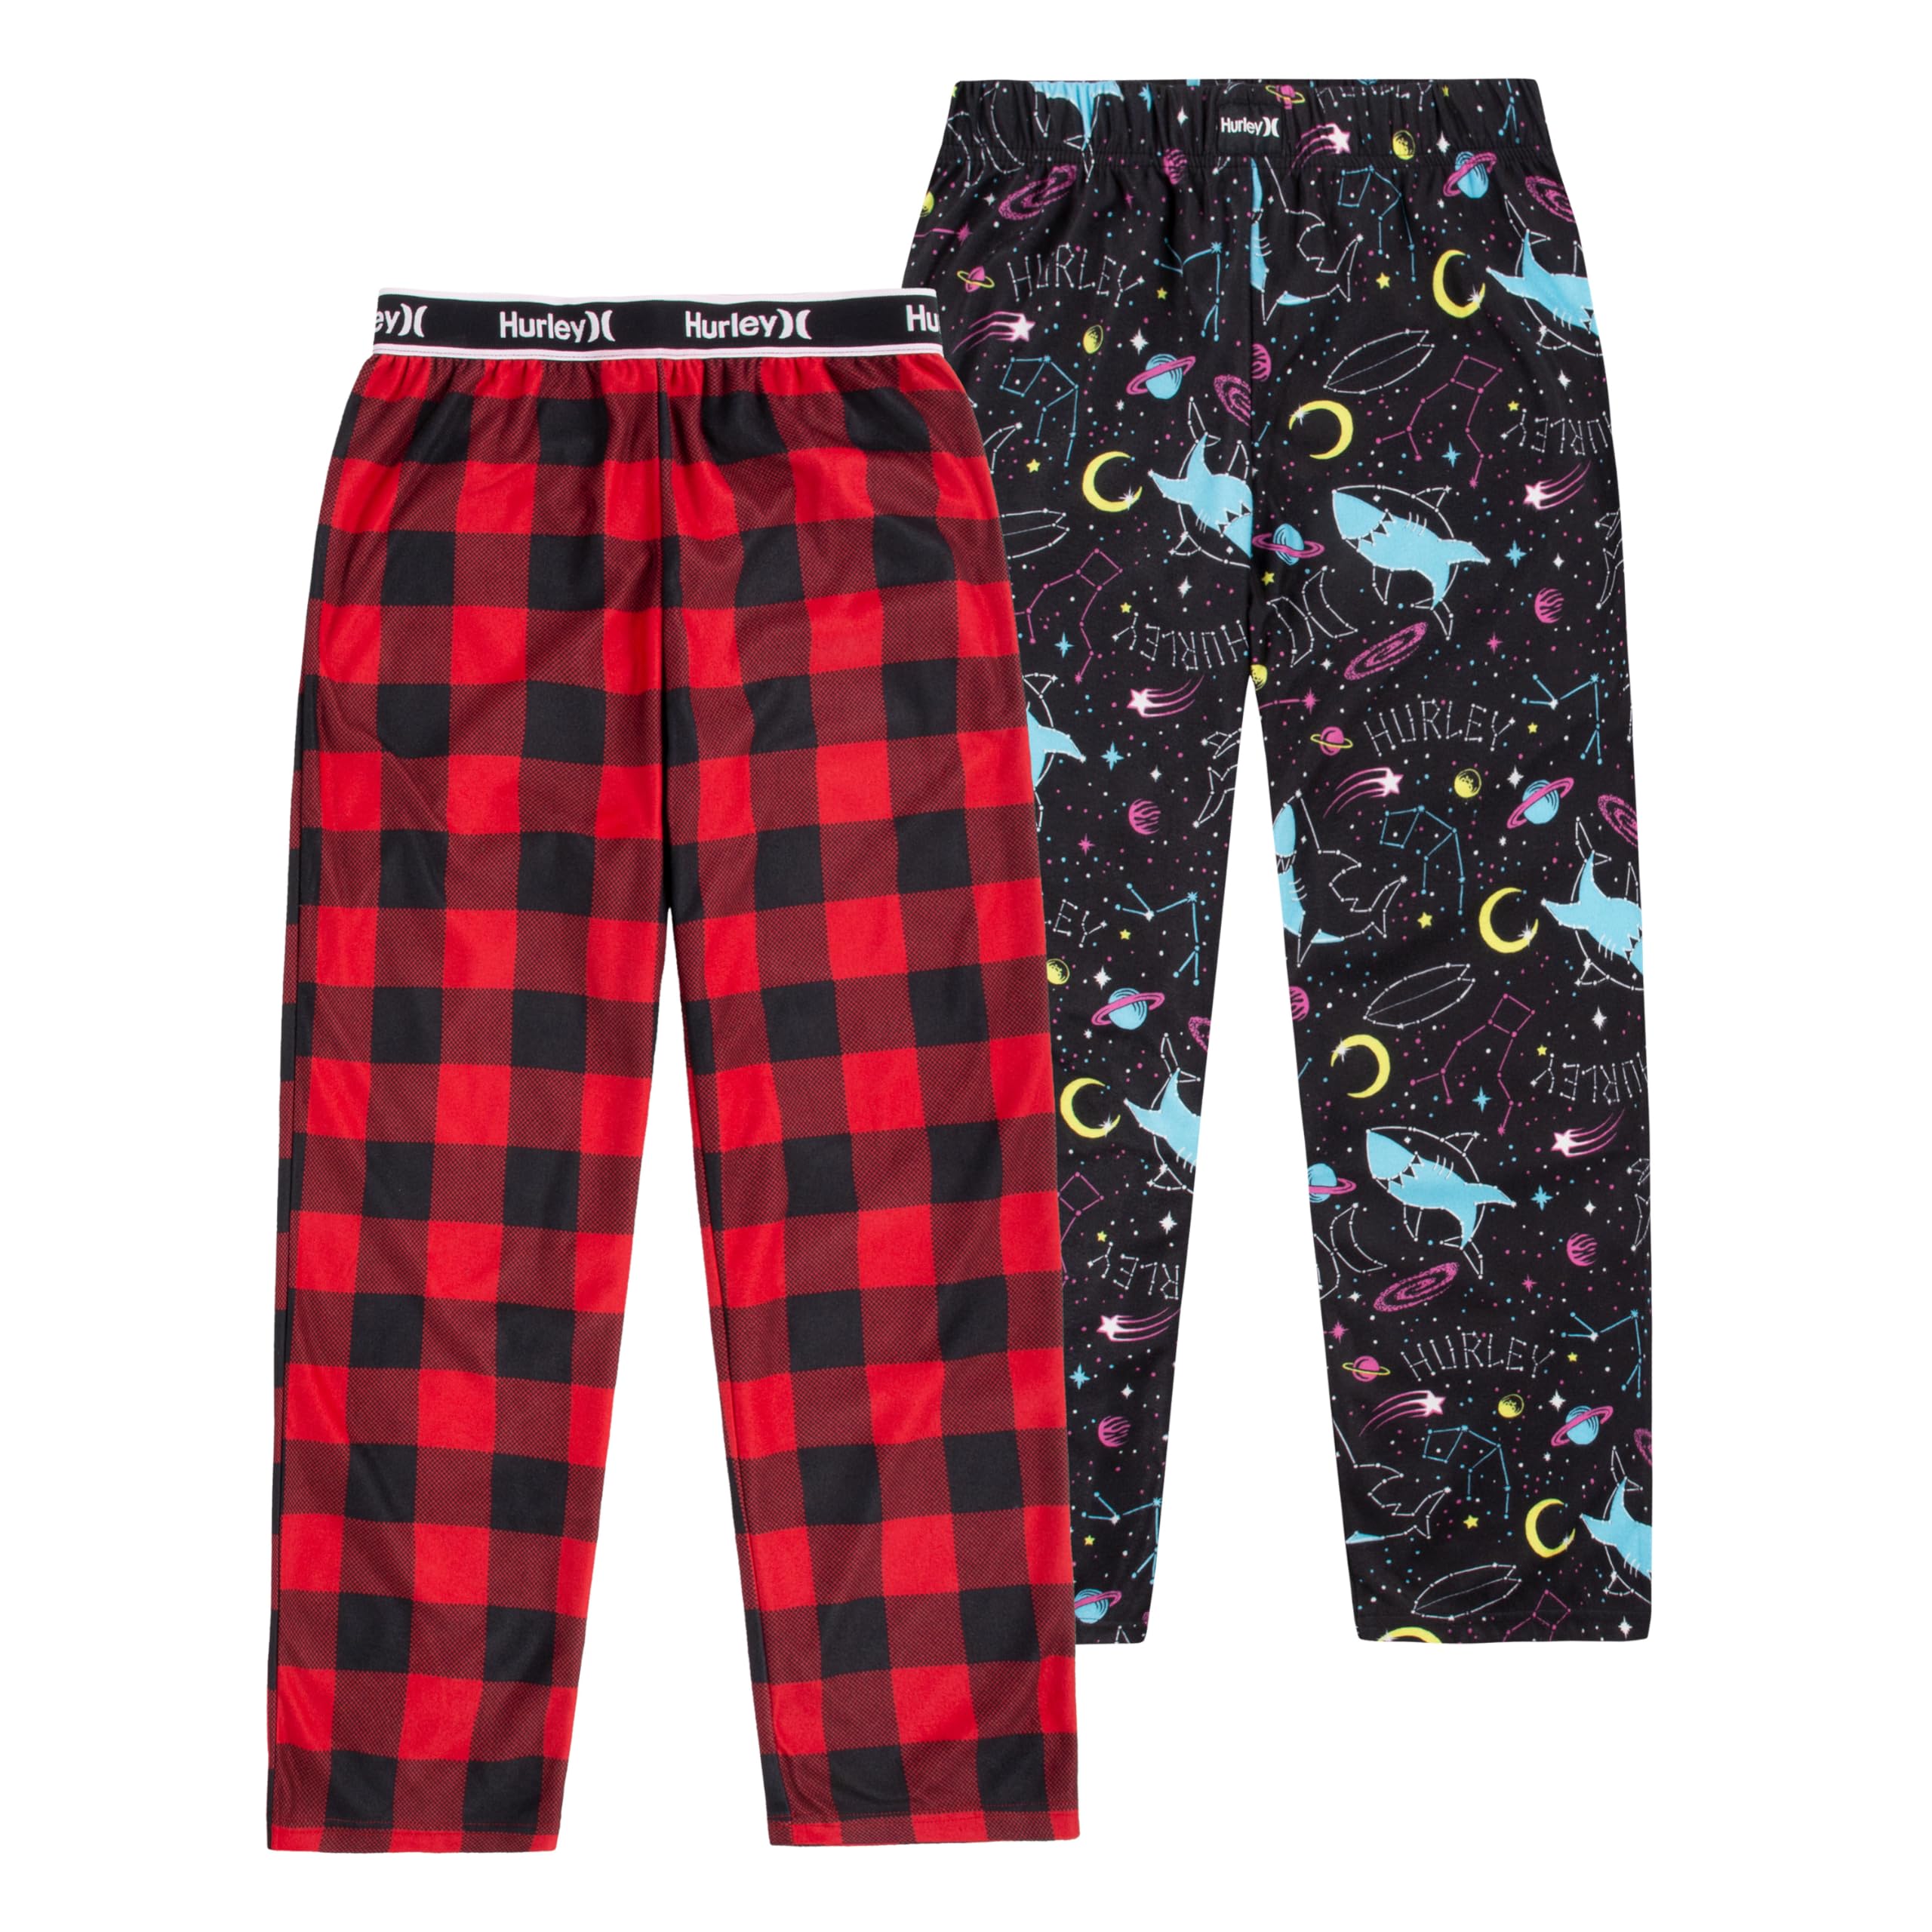 Hurley boys 2-pack Pajama Pants